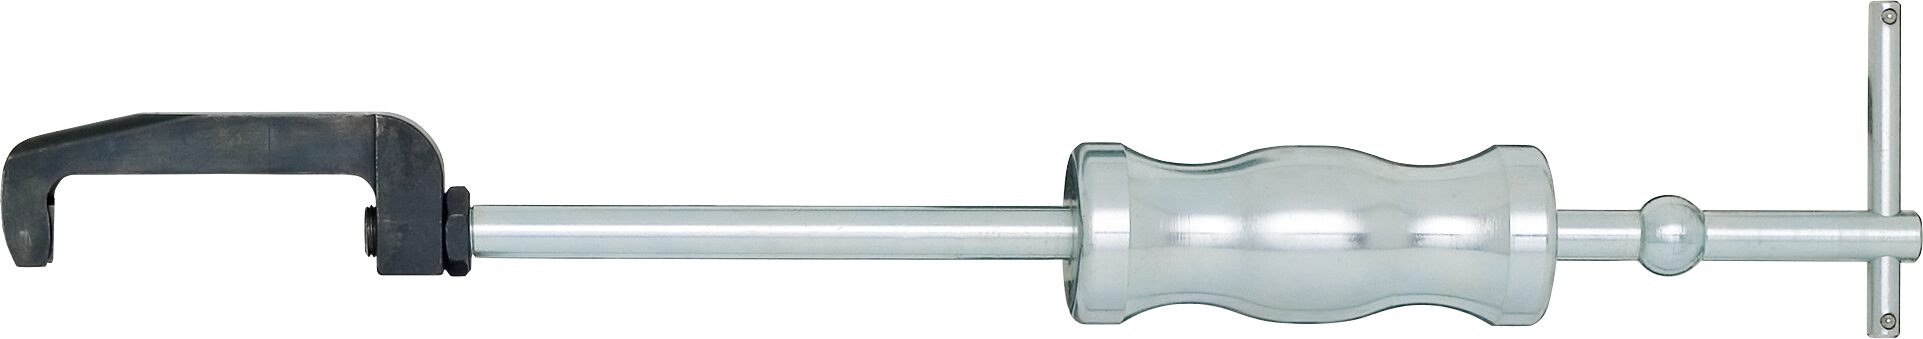 HAZET Injektor-Abzieher 4797/2 · Anzahl Werkzeuge: 2